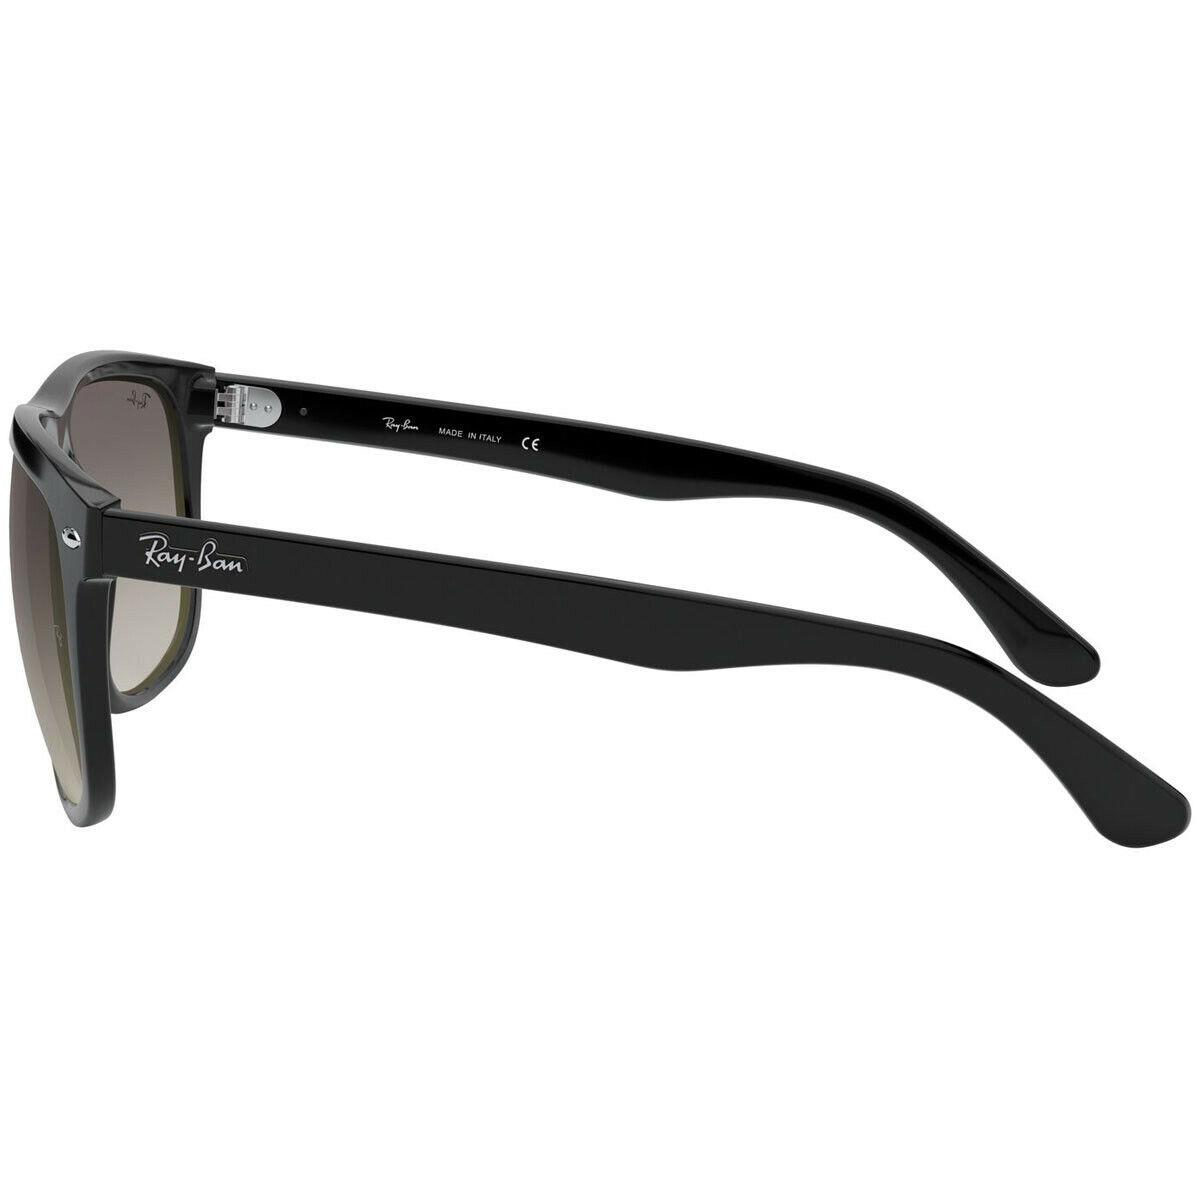 Centimeter Unpacking label Ray-ban Boyfriend Light Grey Lens Black Frame Unisex Sunglasses RB4147 601/ 32-60 | 805289391579 - Ray-Ban sunglasses - Black Frame, Black Lens | Fash  Direct